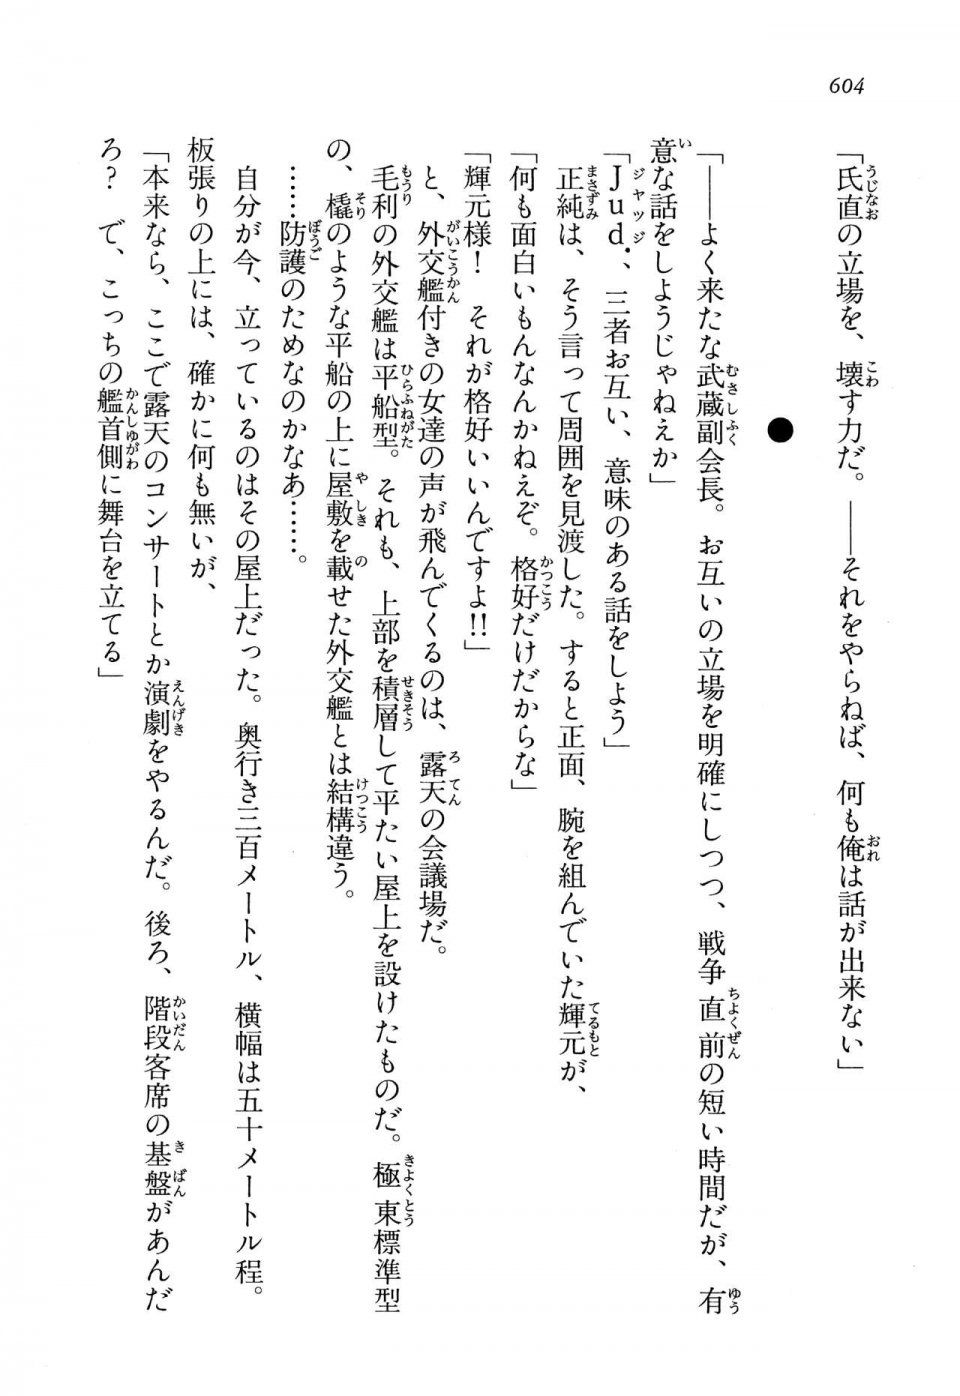 Kyoukai Senjou no Horizon LN Vol 13(6A) - Photo #604